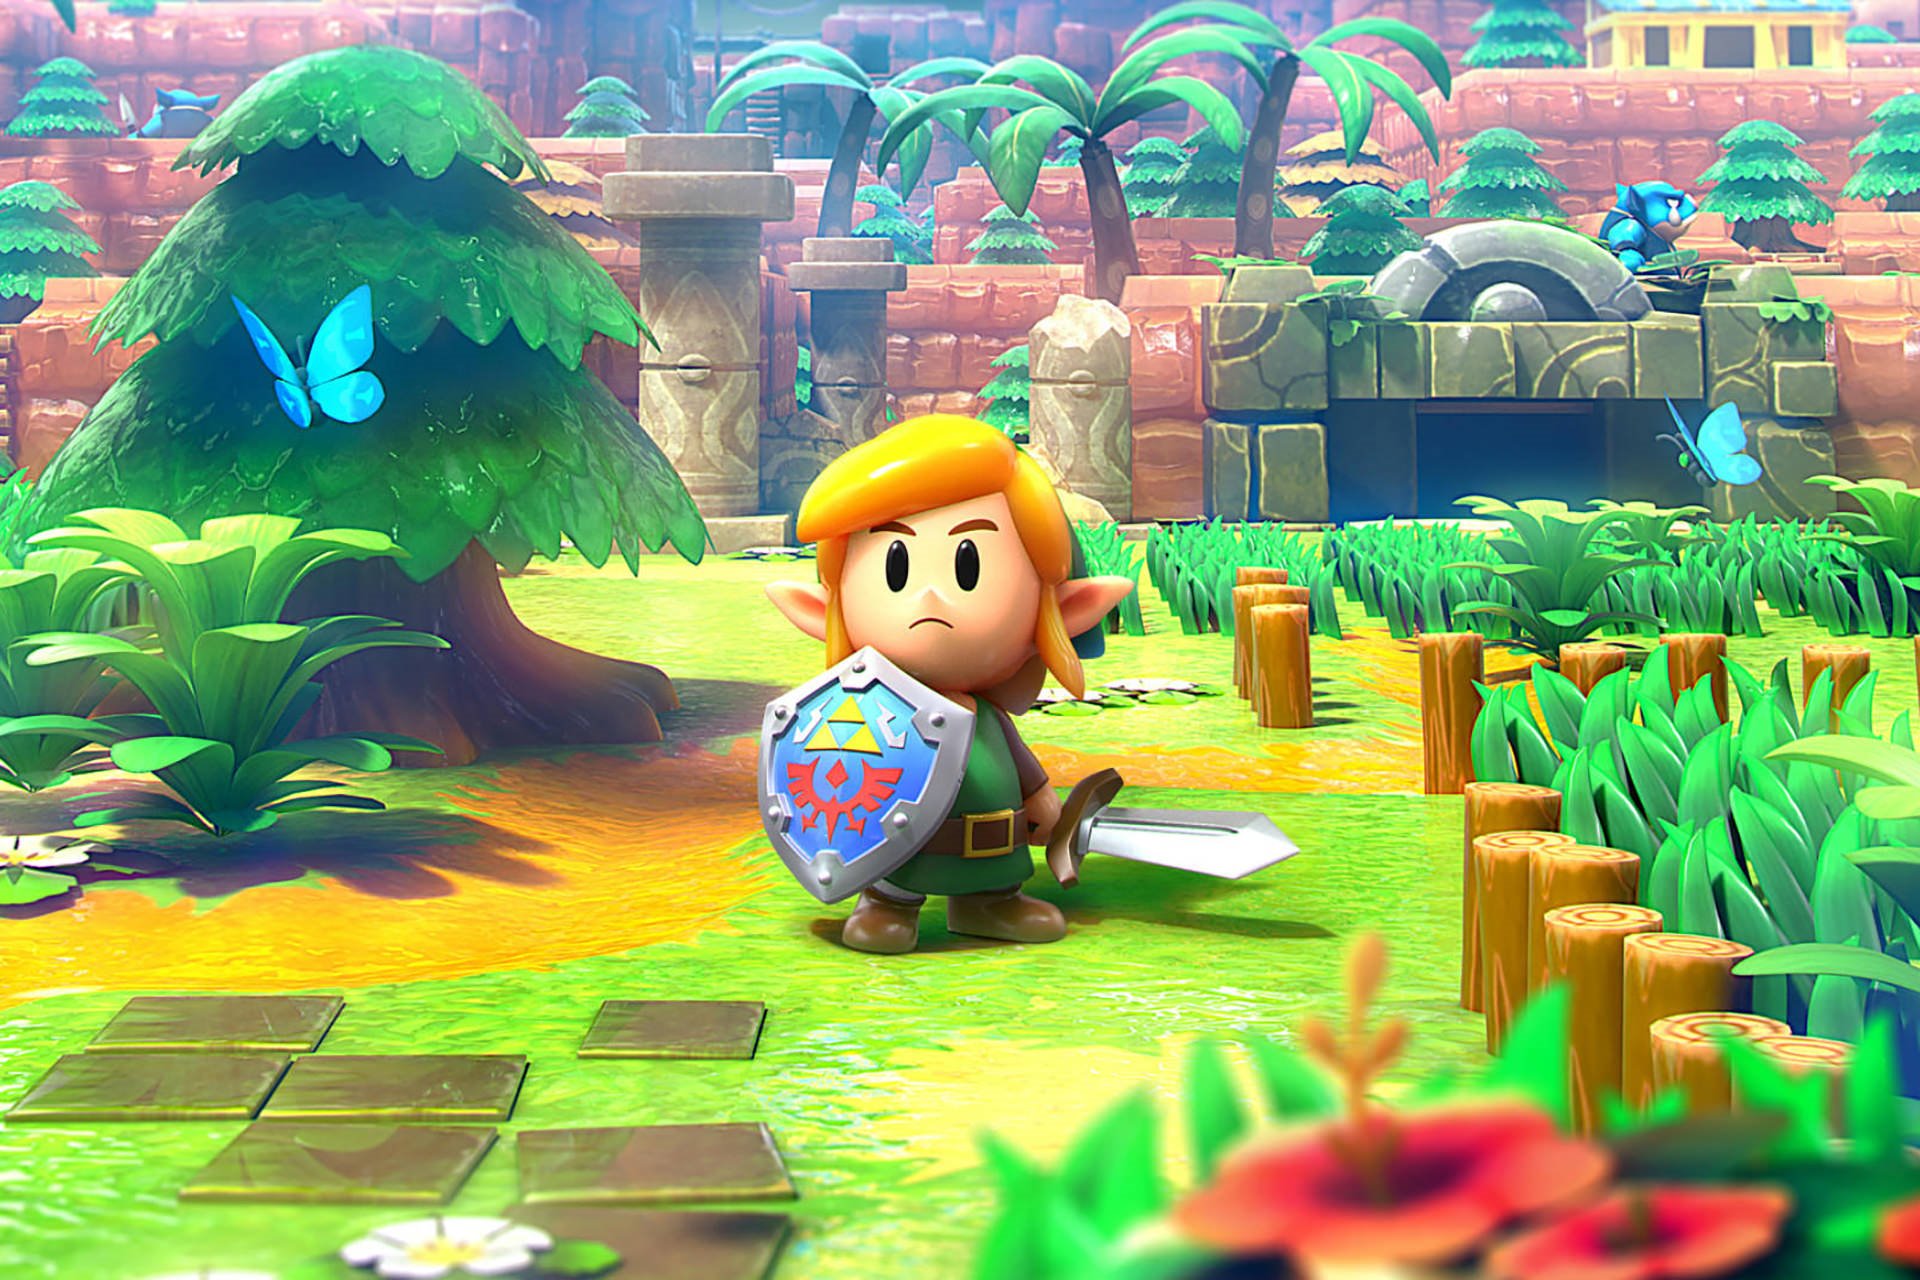 بررسی بازی The Legend of Zelda: Link's Awakening